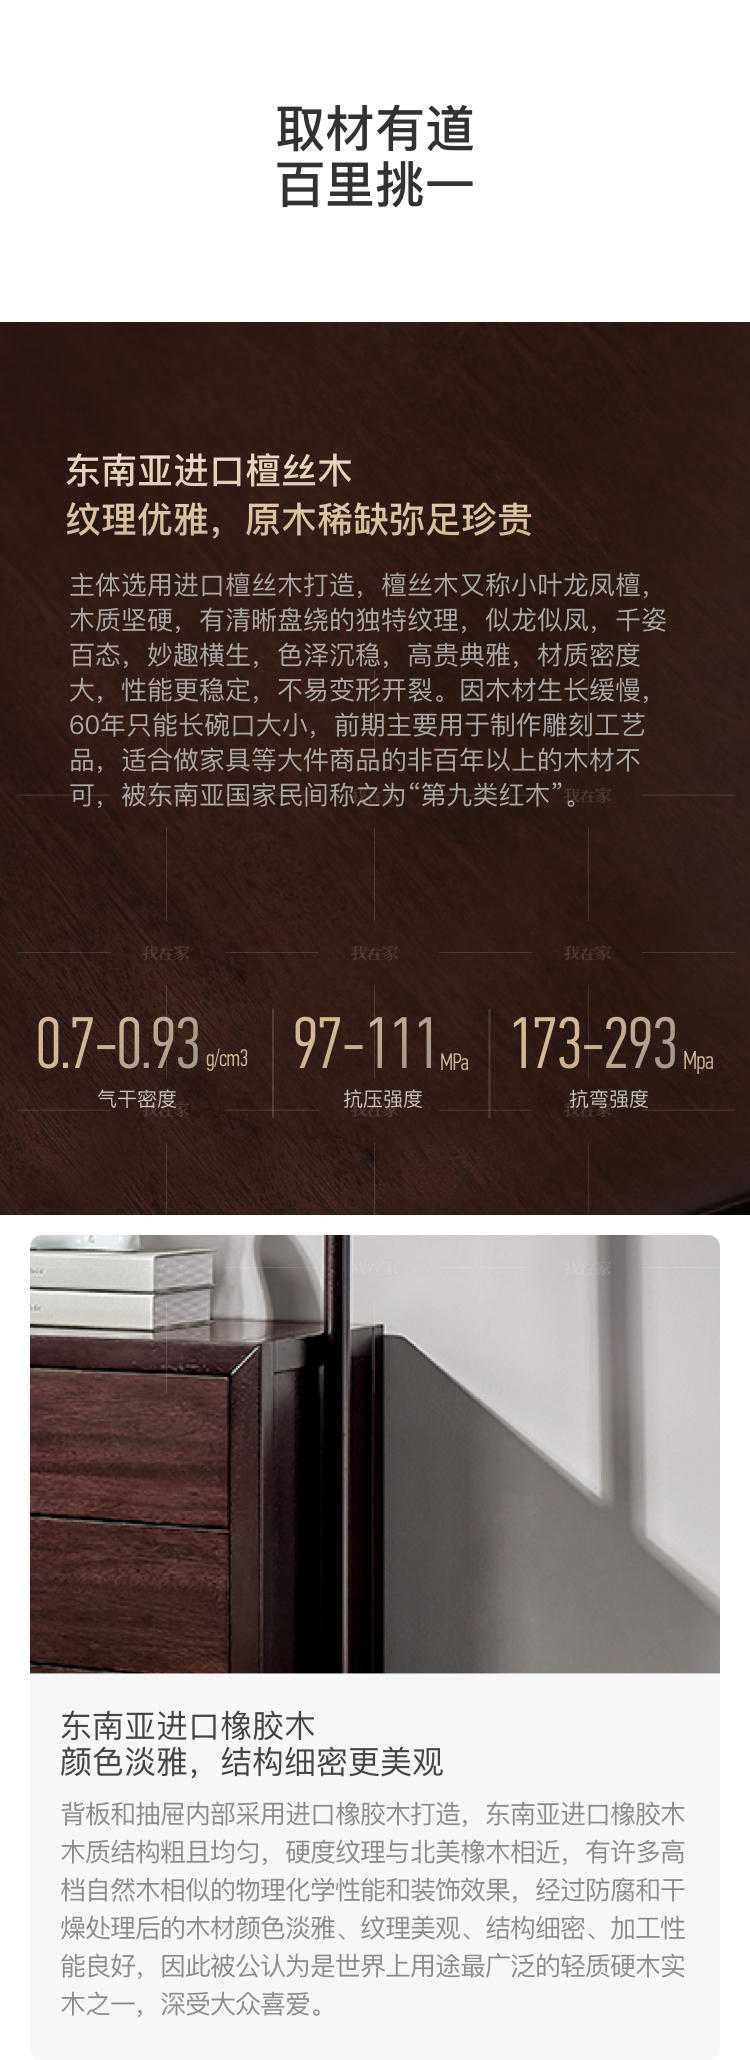 新中式风格似锦衣帽架的家具详细介绍